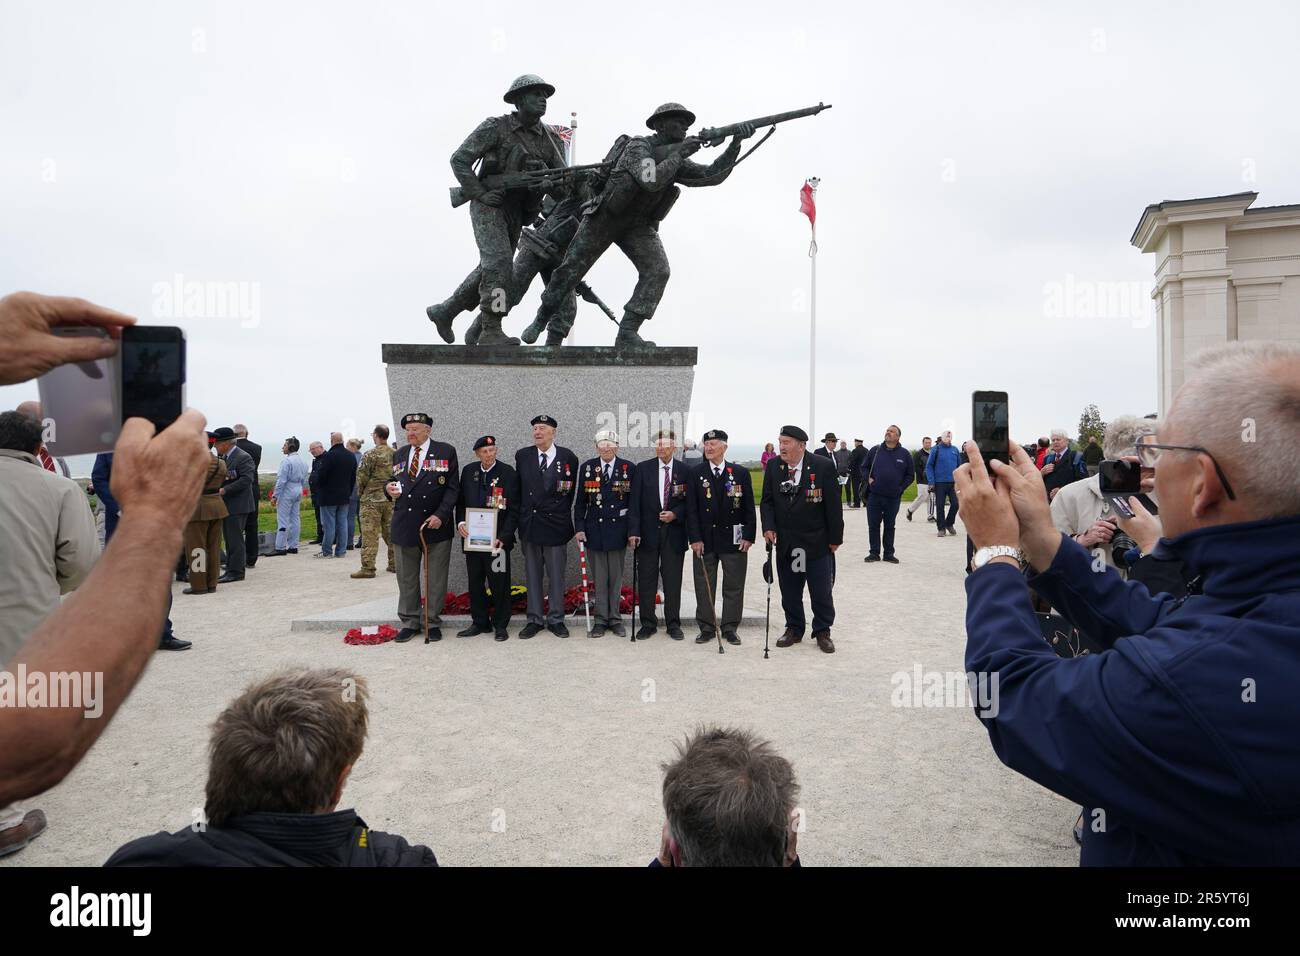 D-Day-Veteranen posieren für Fotos an der Statue des Denkmals der Britischen Normandie nach dem Gedenkgottesdienst der Royal British Legion (RBL) anlässlich des 79. Jahrestages der Landungen des D-Day im Denkmal der Britischen Normandie in Ver-sur-Mer, Normandie, Frankreich. Der Dienst erinnert an die 22.442 Soldaten und Frauen aus 38 verschiedenen Ländern, die am D-Day und während der Schlacht in der Normandie im Sommer 1944 unter britischem Kommando starben. Foto: Dienstag, 6. Juni 2023. Stockfoto